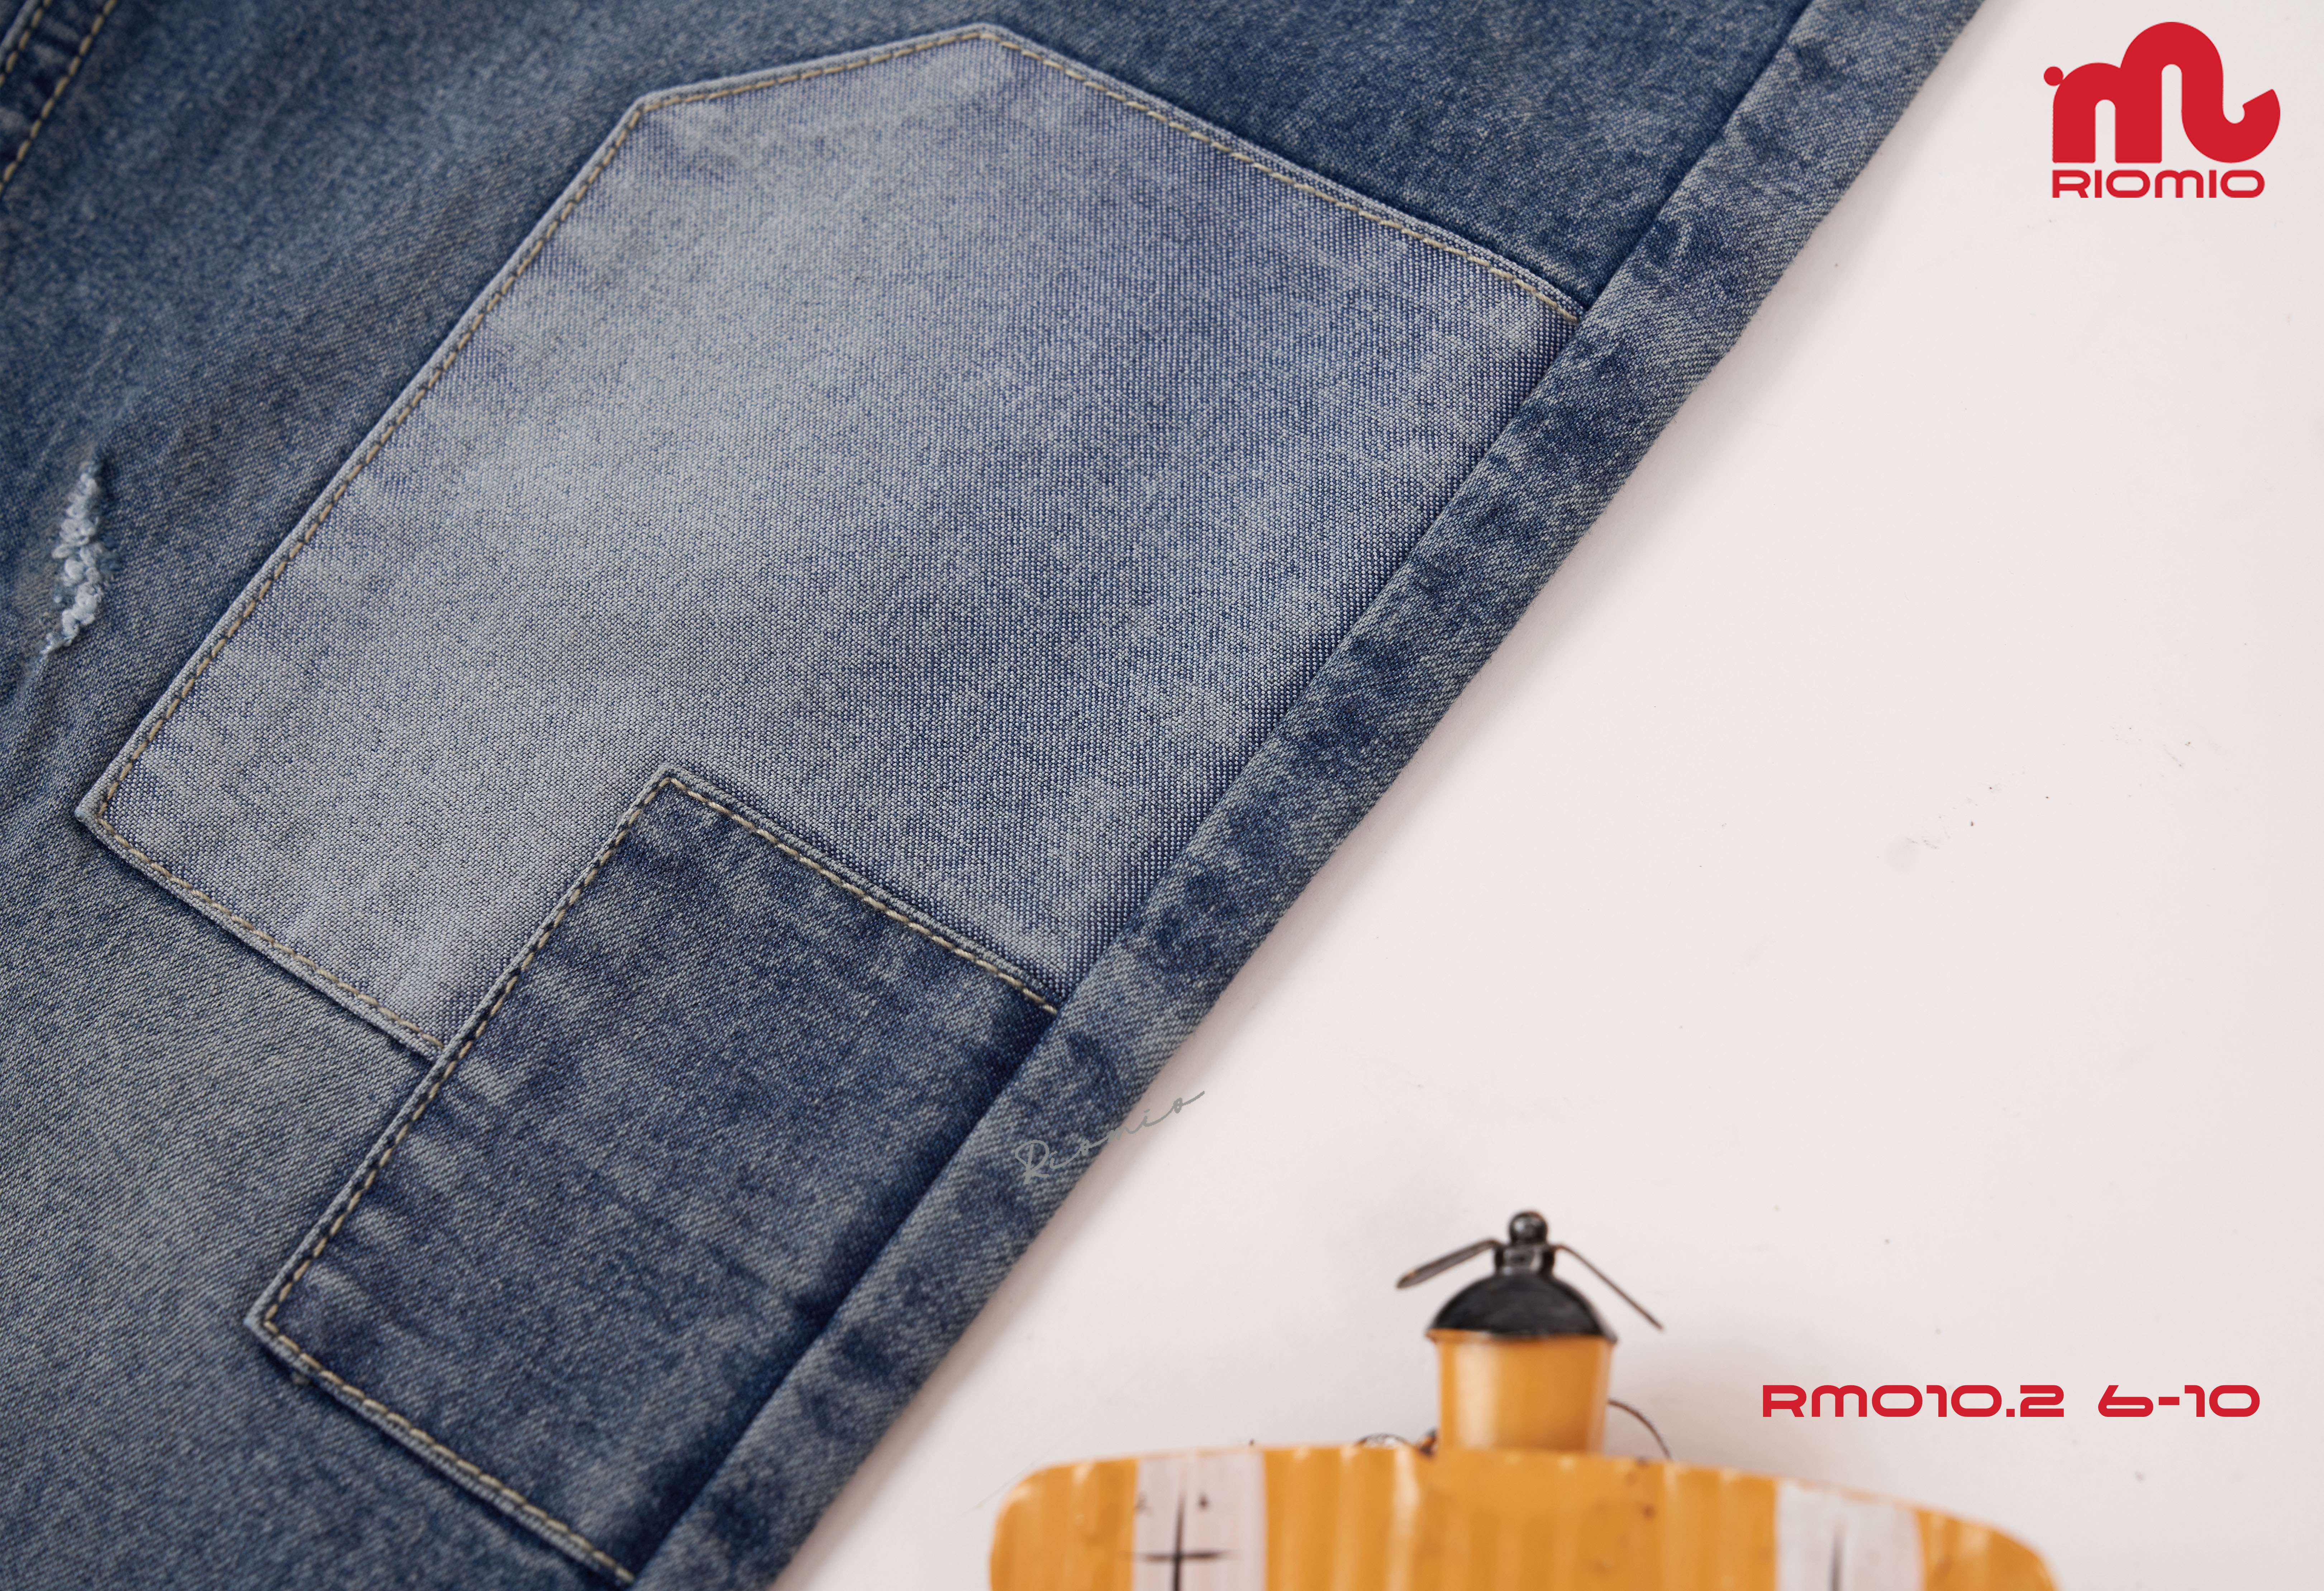 Quần jeans bé trai [Denim Cotton USA] chính hãng RIOMIO – RM010.1 màu light